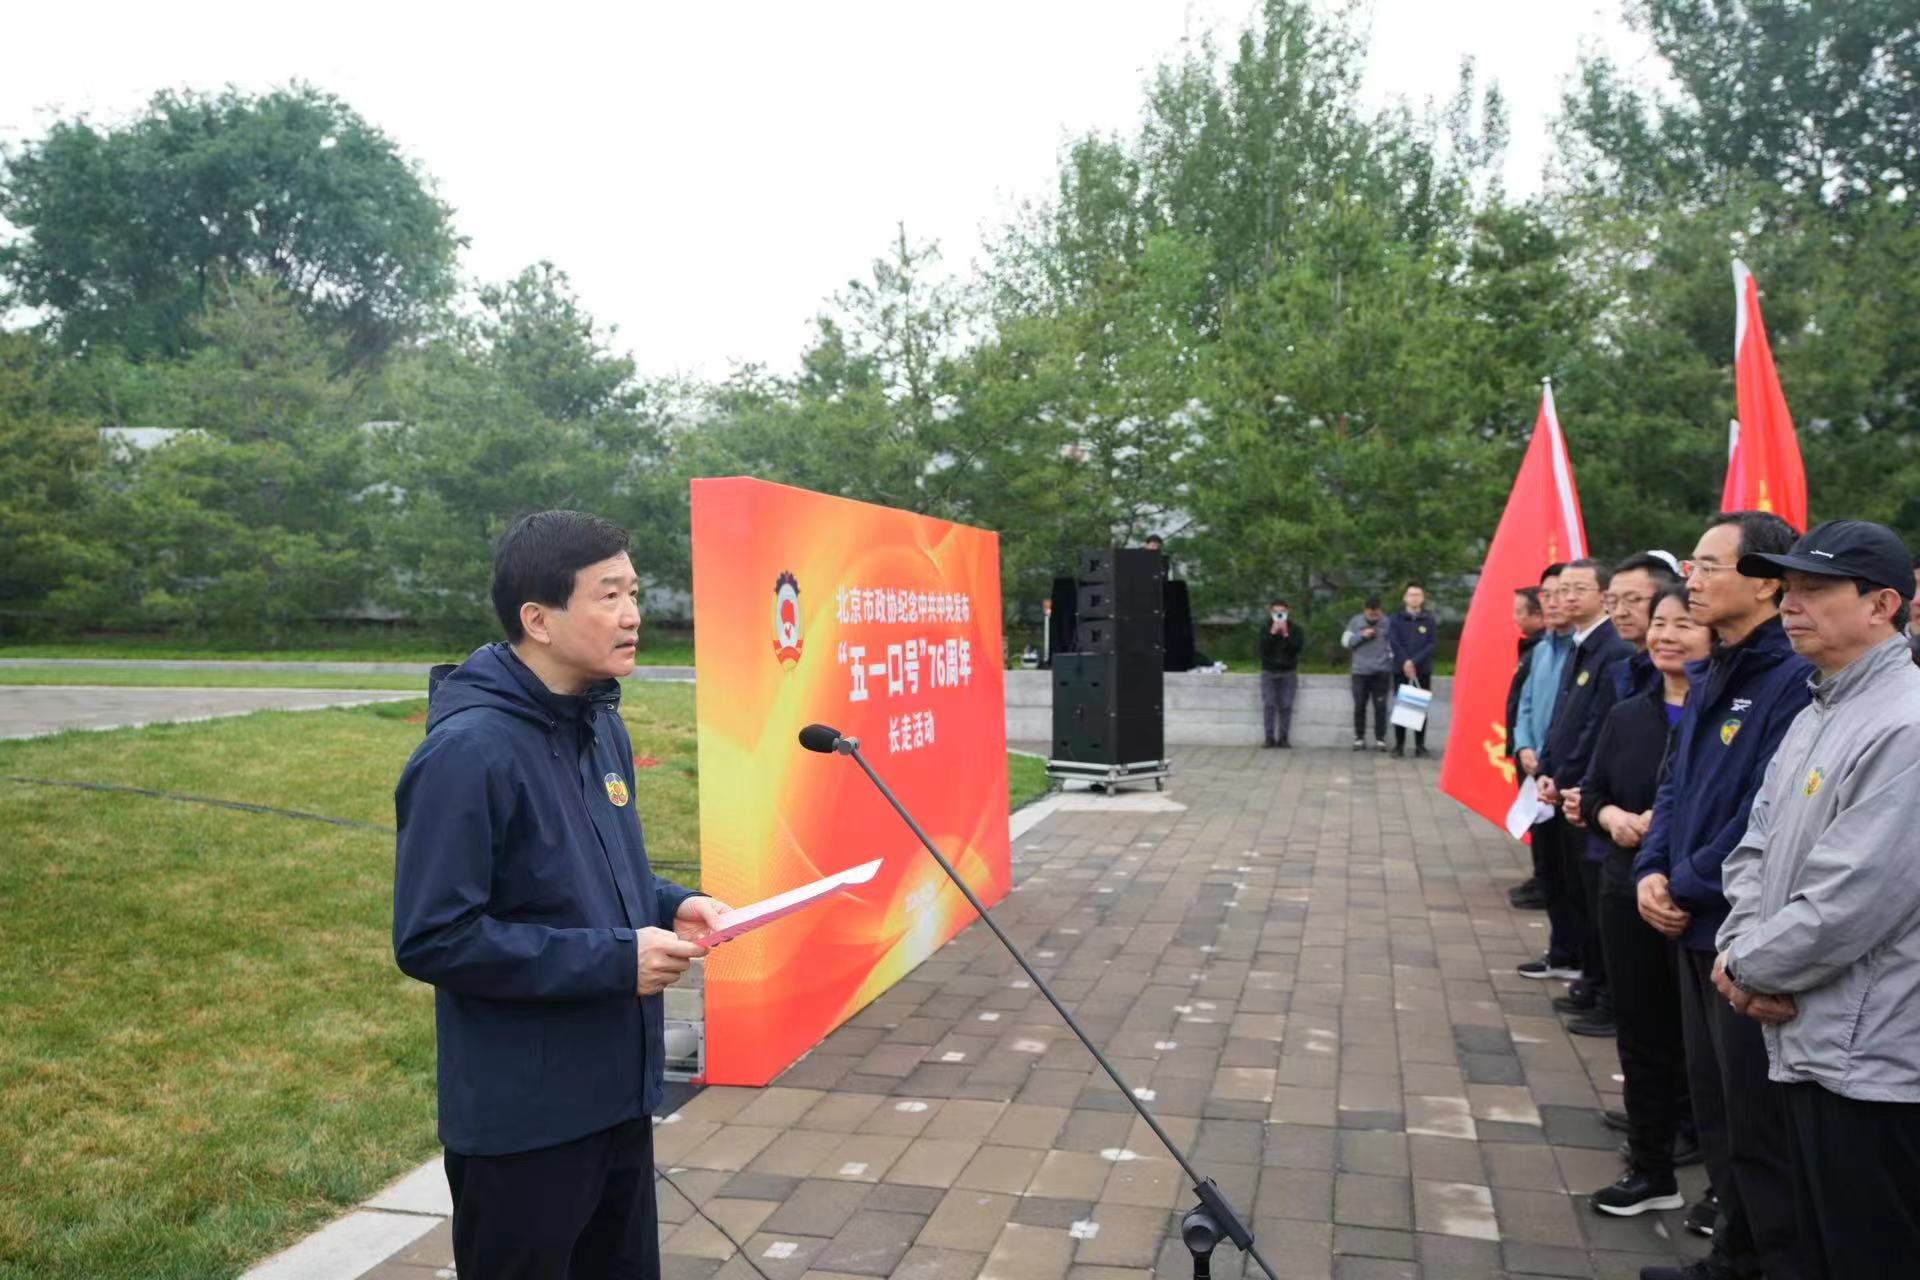 北京市政协举办纪念“五一口号” 发布76周年长走活动